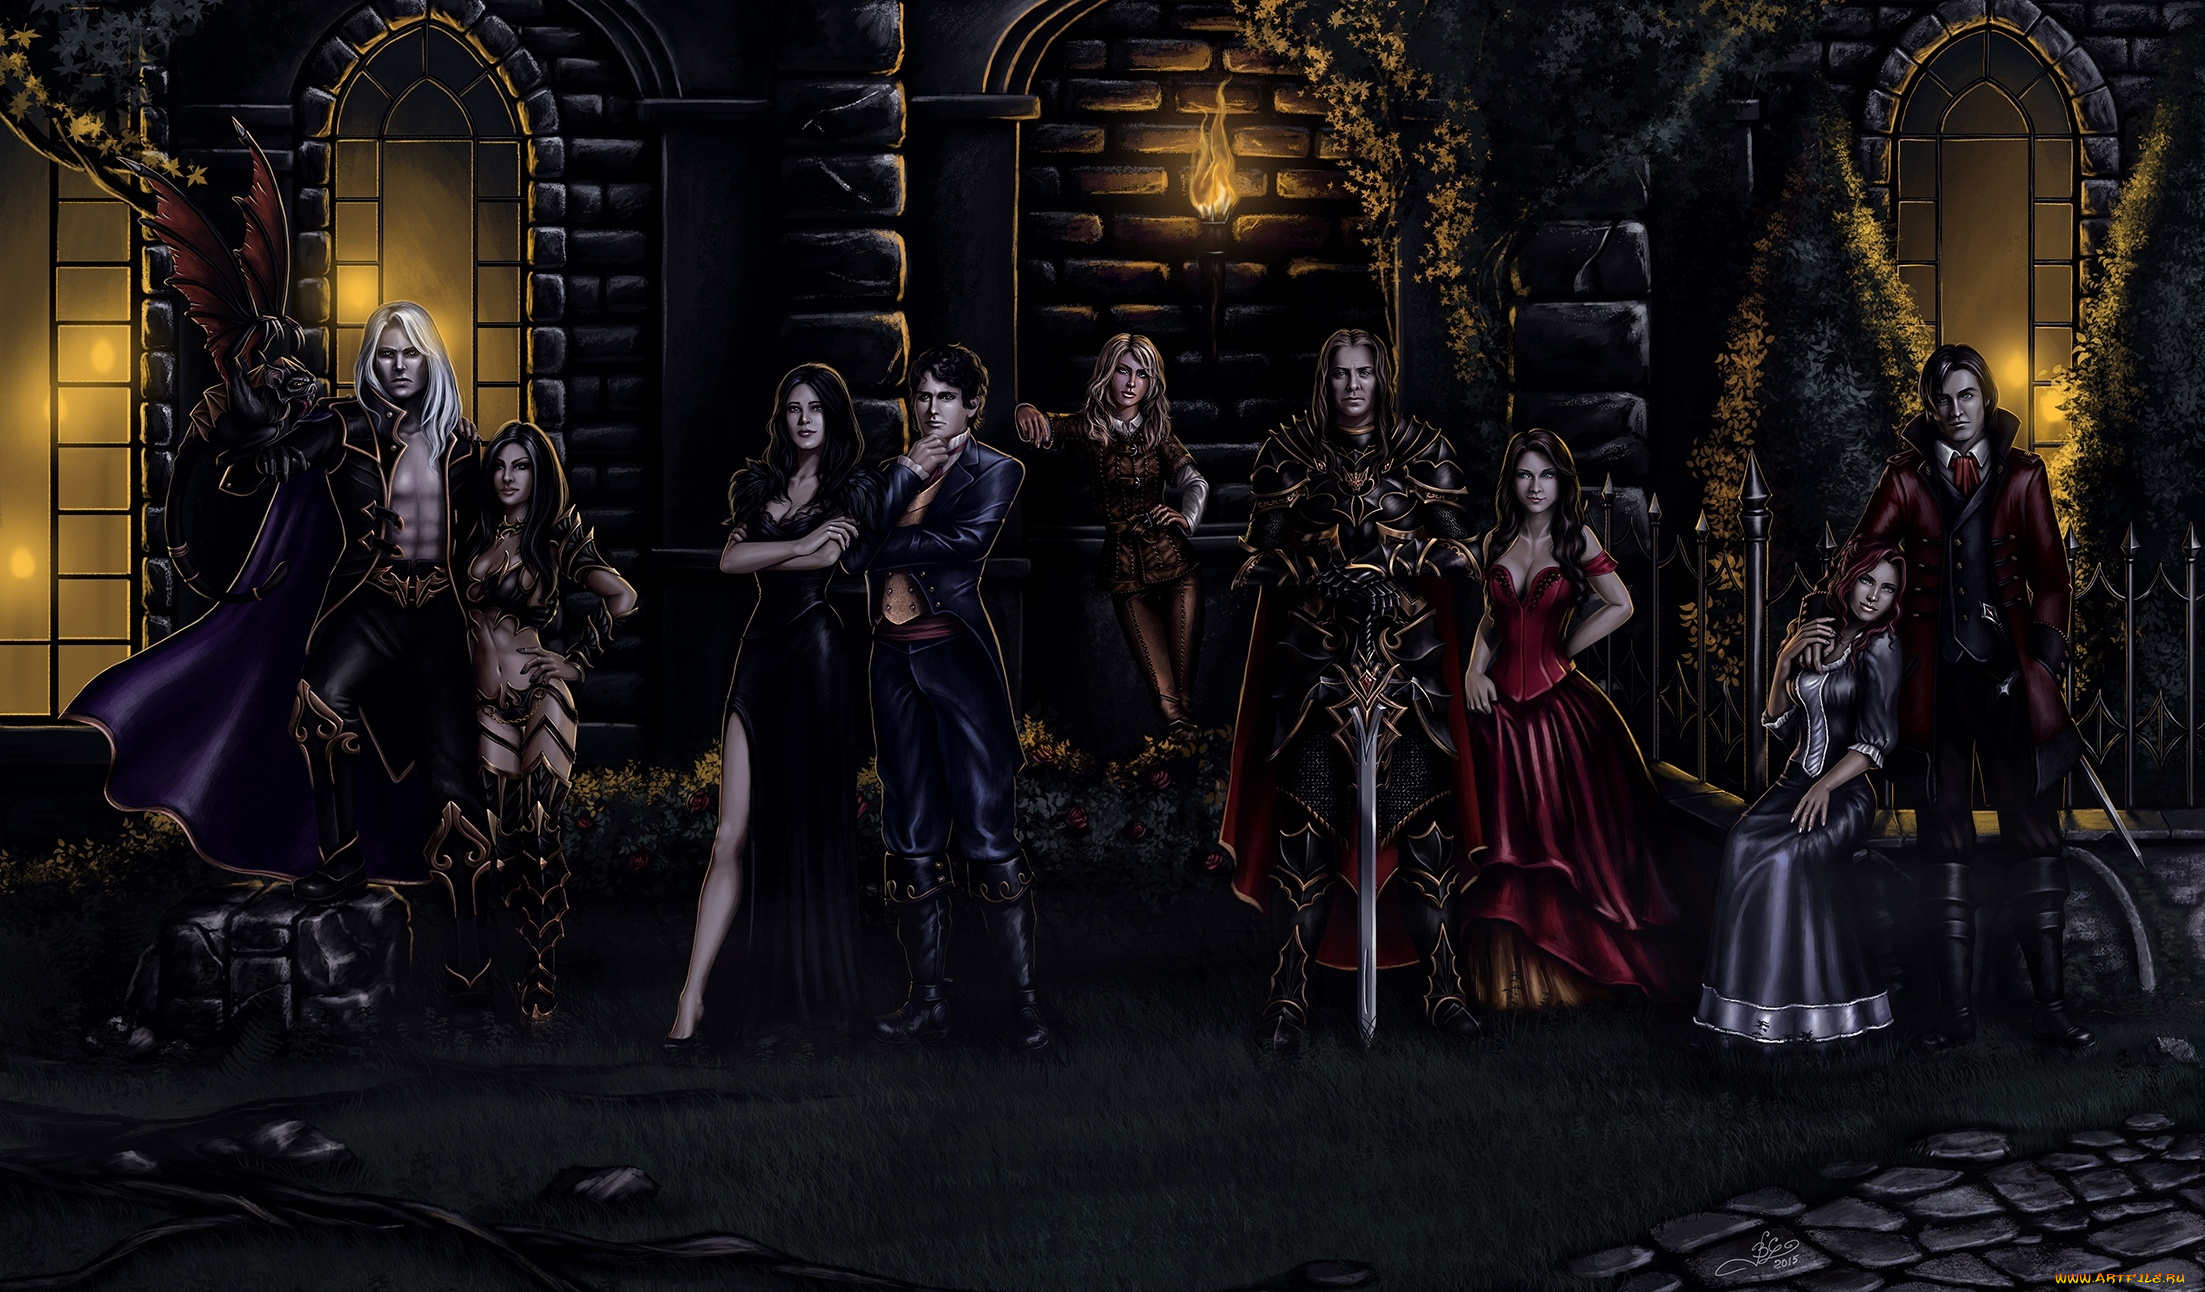 фэнтези, люди, женщины, ночь, меч, рыцарь, костюмы, факел, замок, мужчины, мистика, вампир, арт